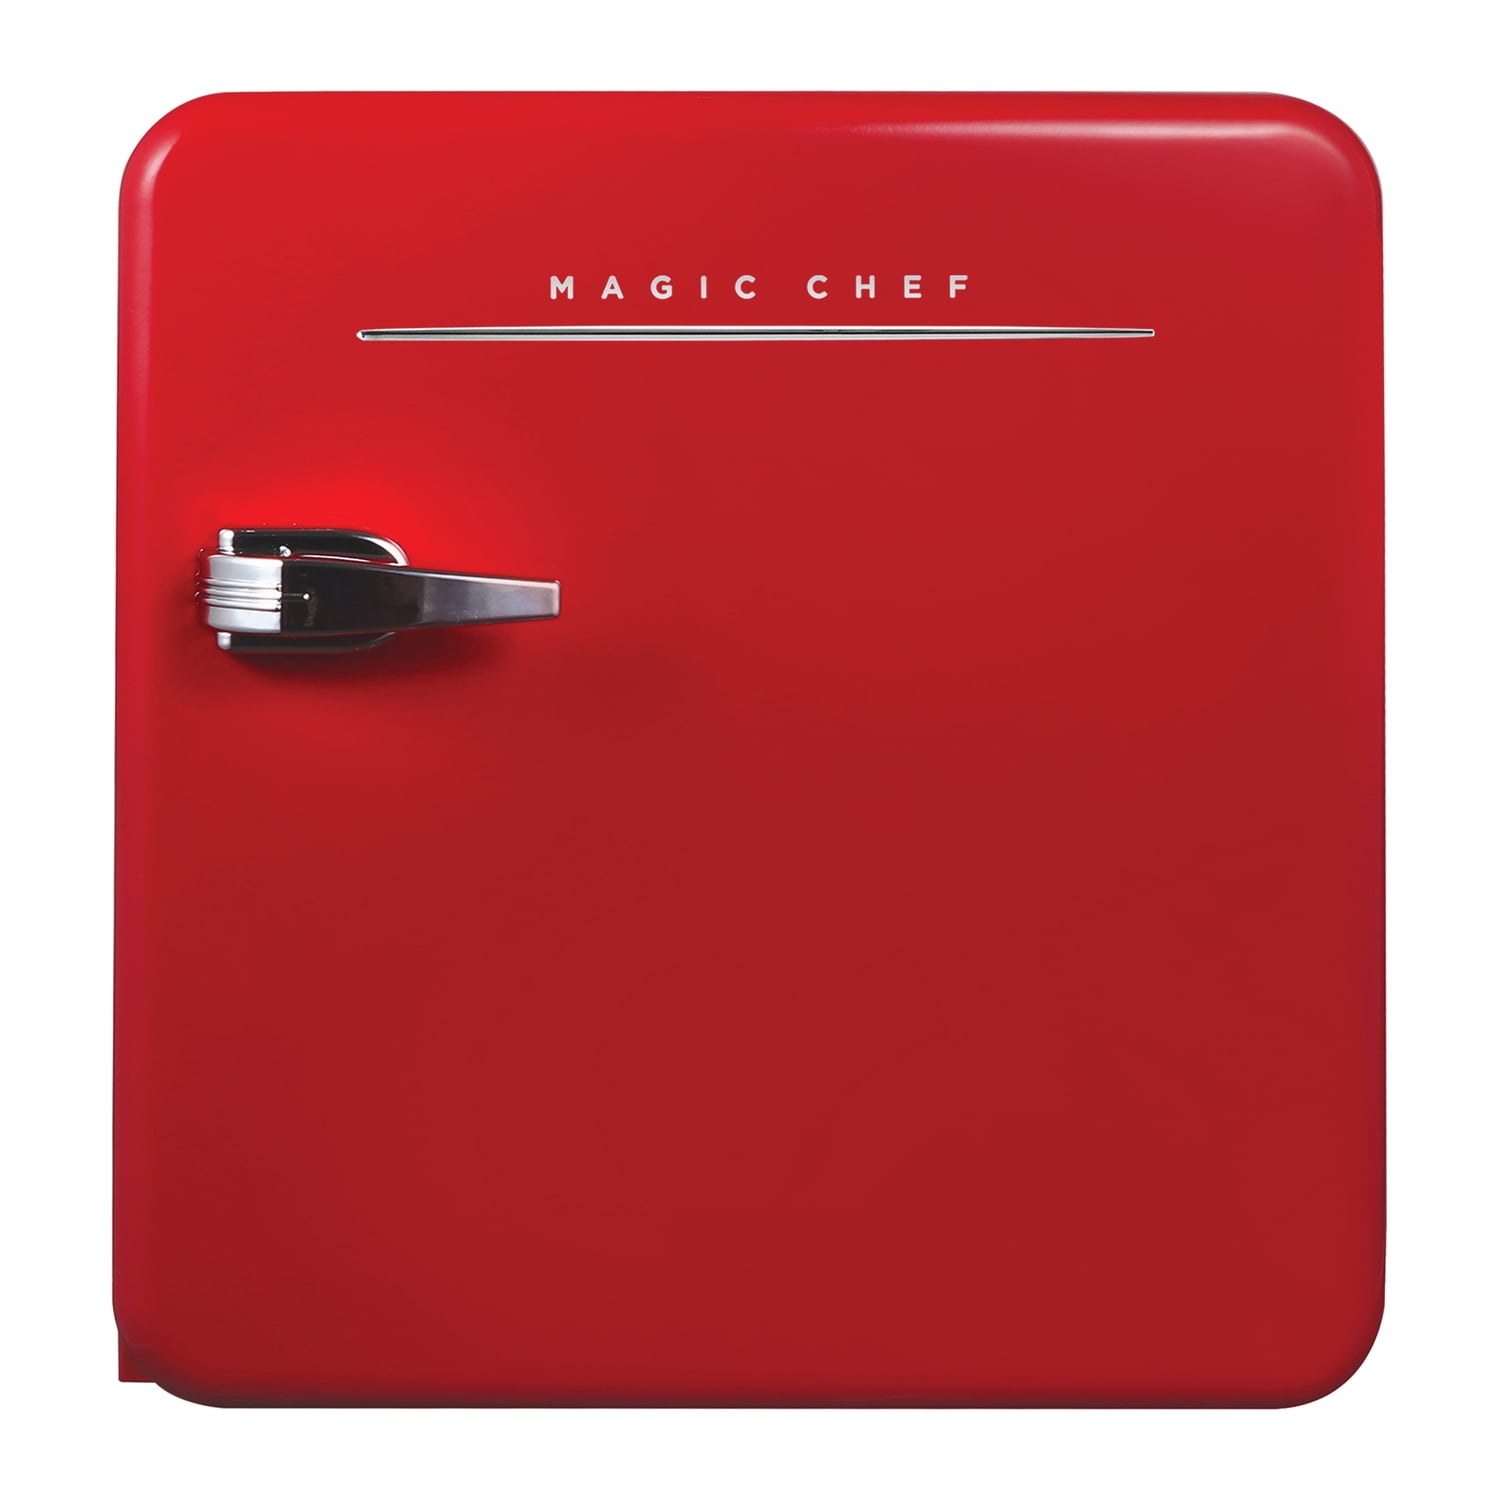 Magic Chef Retro Edition small refrigerator - in mint, red, and white -  Retro Renovation